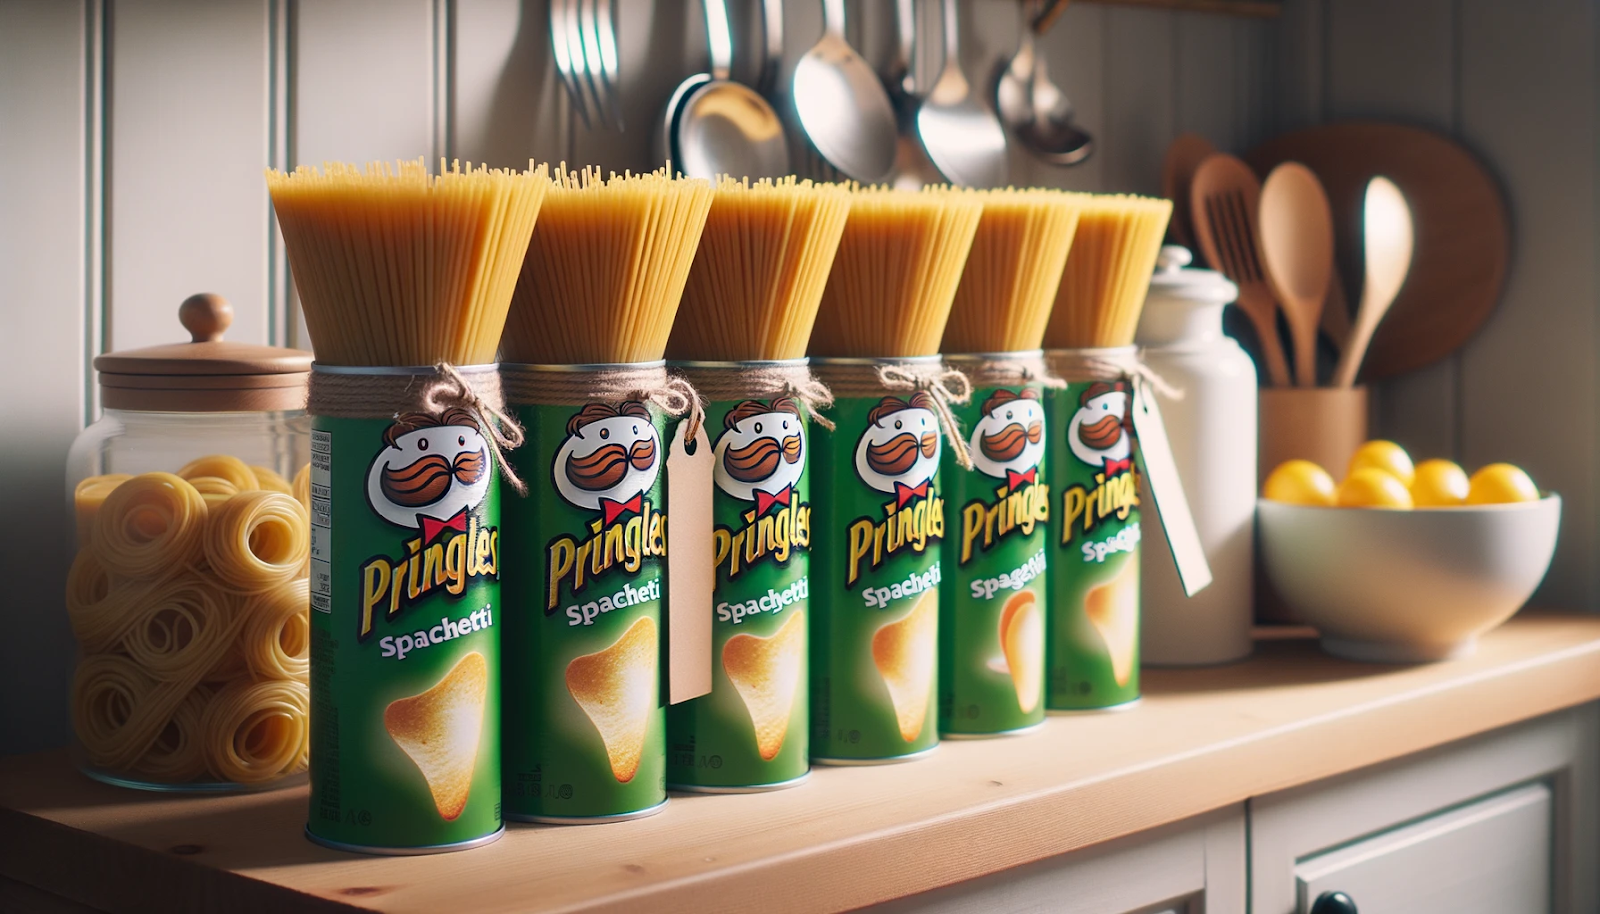 Foto de uma cena real de cozinha onde latas de Pringles são usadas como recipientes de armazenamento de espaguete. As latas são etiquetadas com etiquetas decorativas e ficam organizadas em uma prateleira de madeira, apresentando uma solução de armazenamento inovadora.